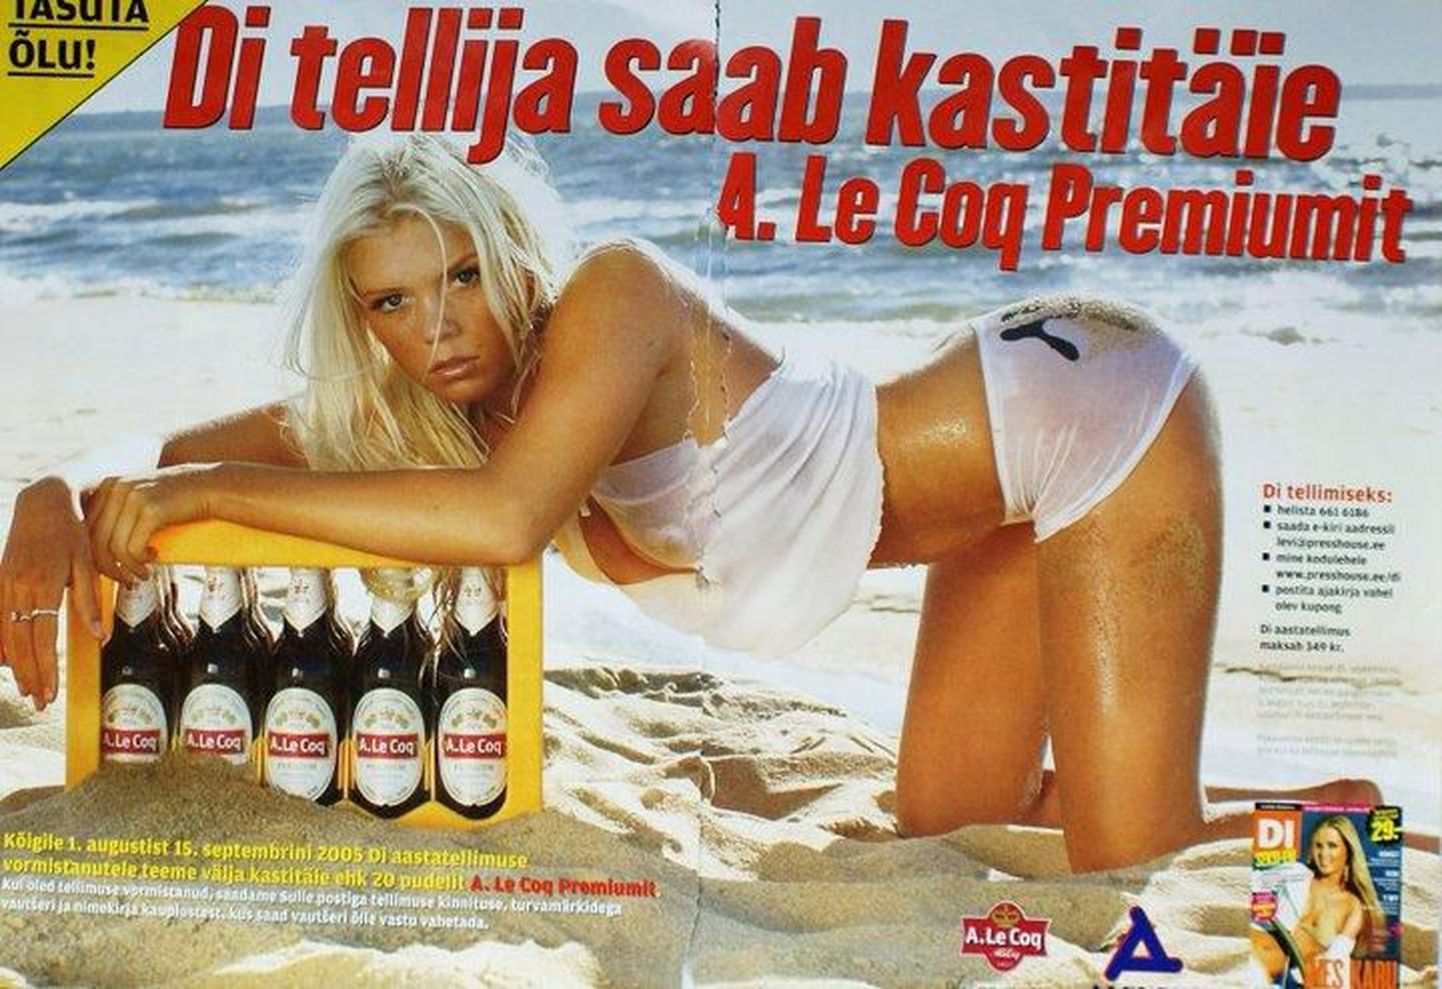 16-aastane modell Janne Jüsma alkoholireklaamis ajakirja DI veergudel aastal 2004